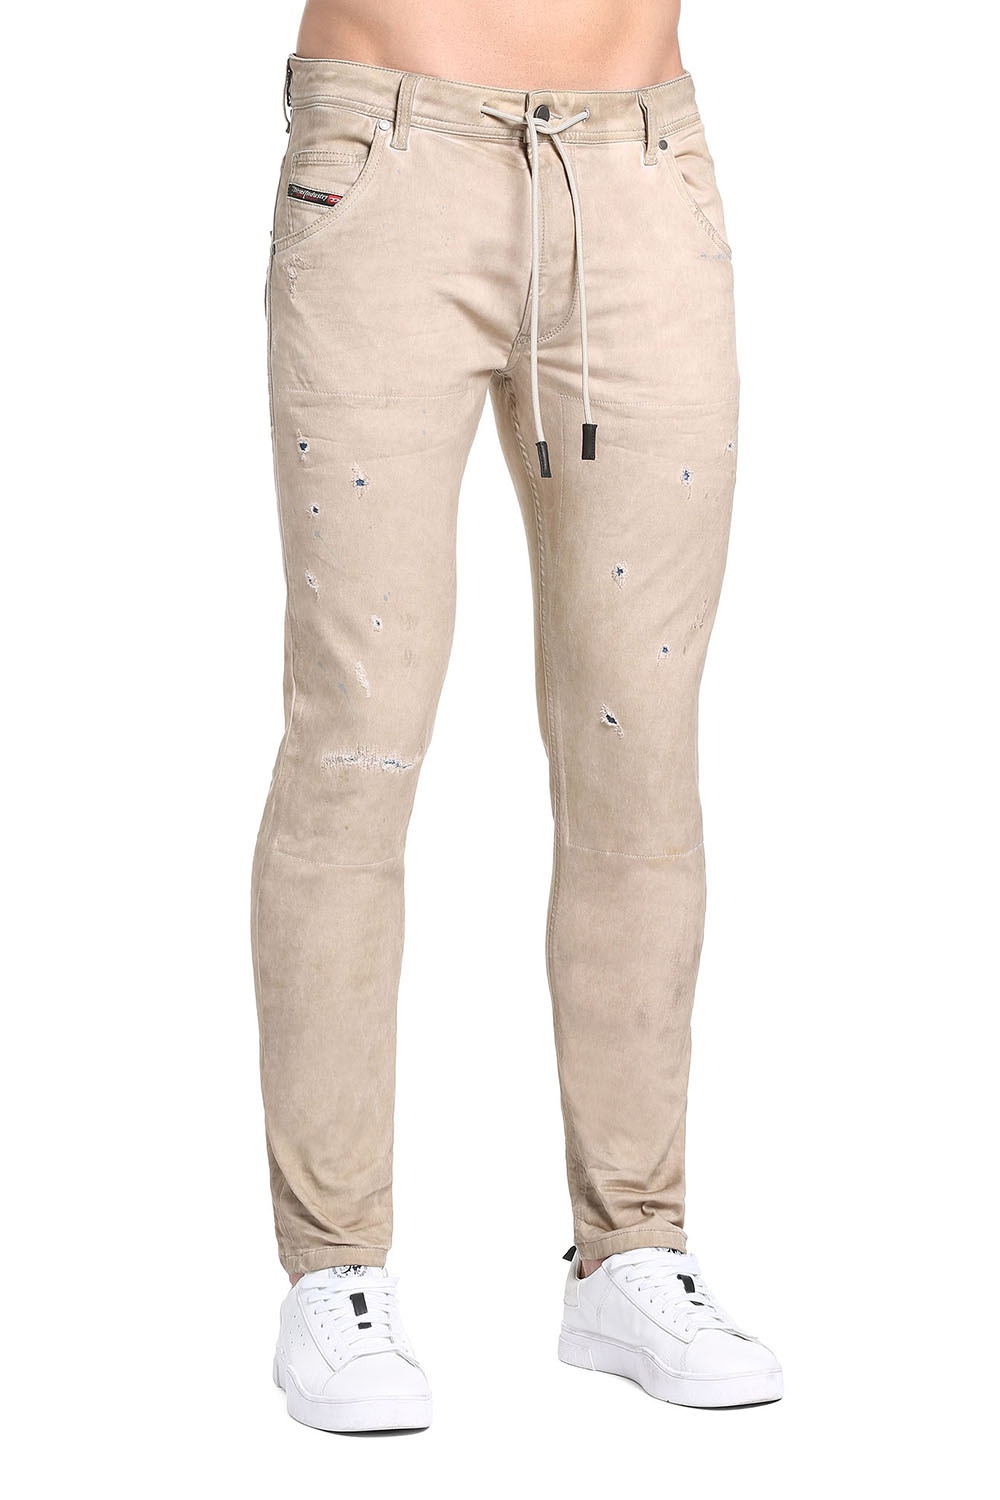 Diesel Solid Color Men's Jeans | Odel.lk